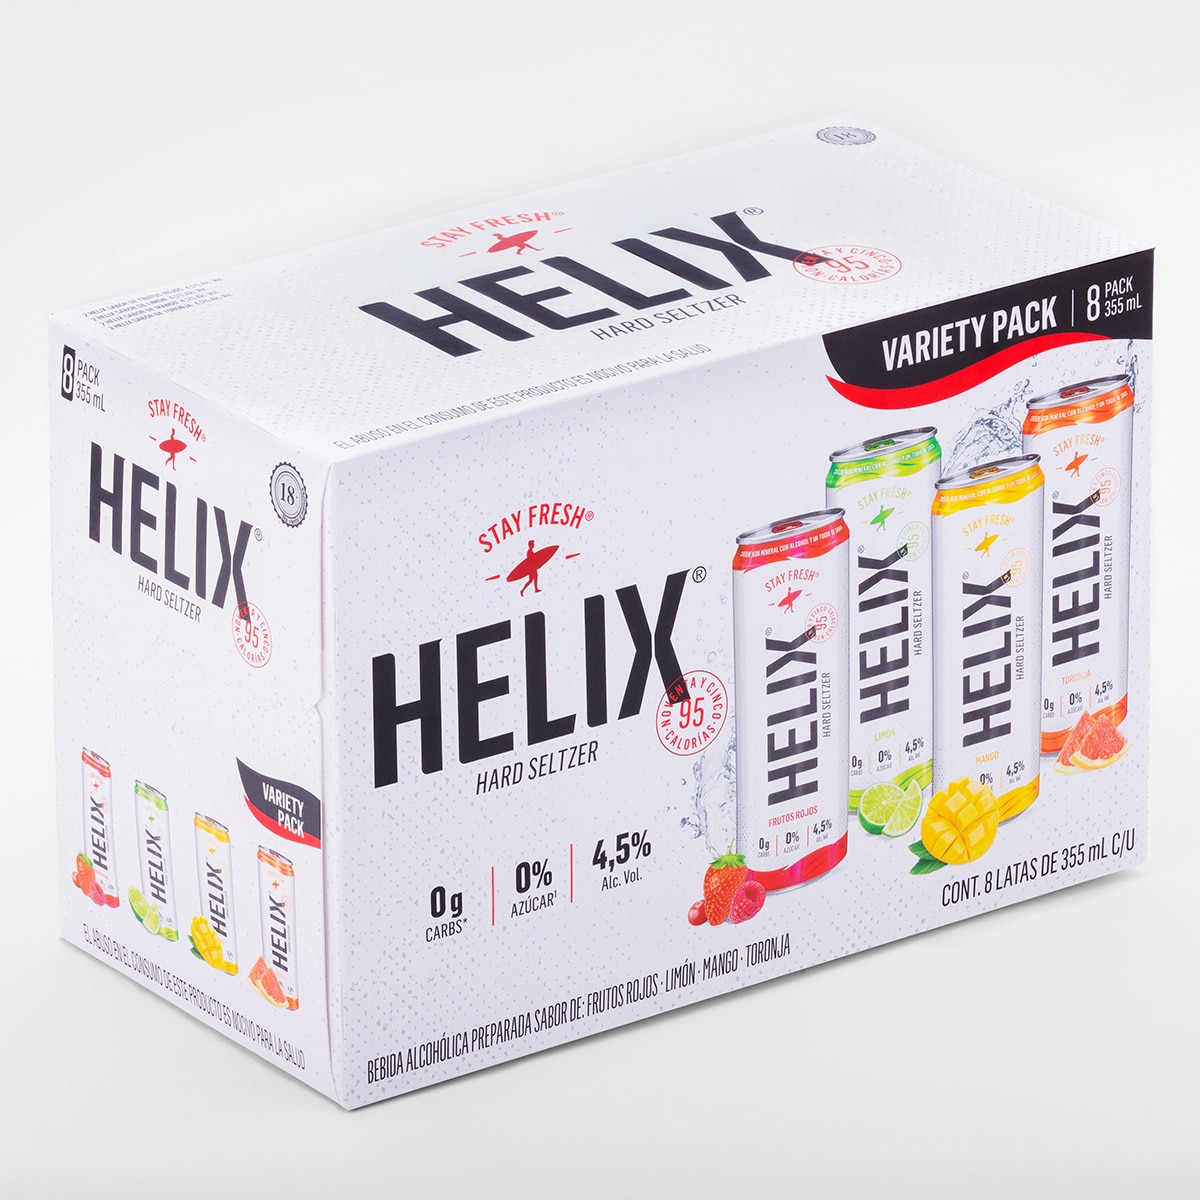 Hard Seltzer Helix 8/355 ml